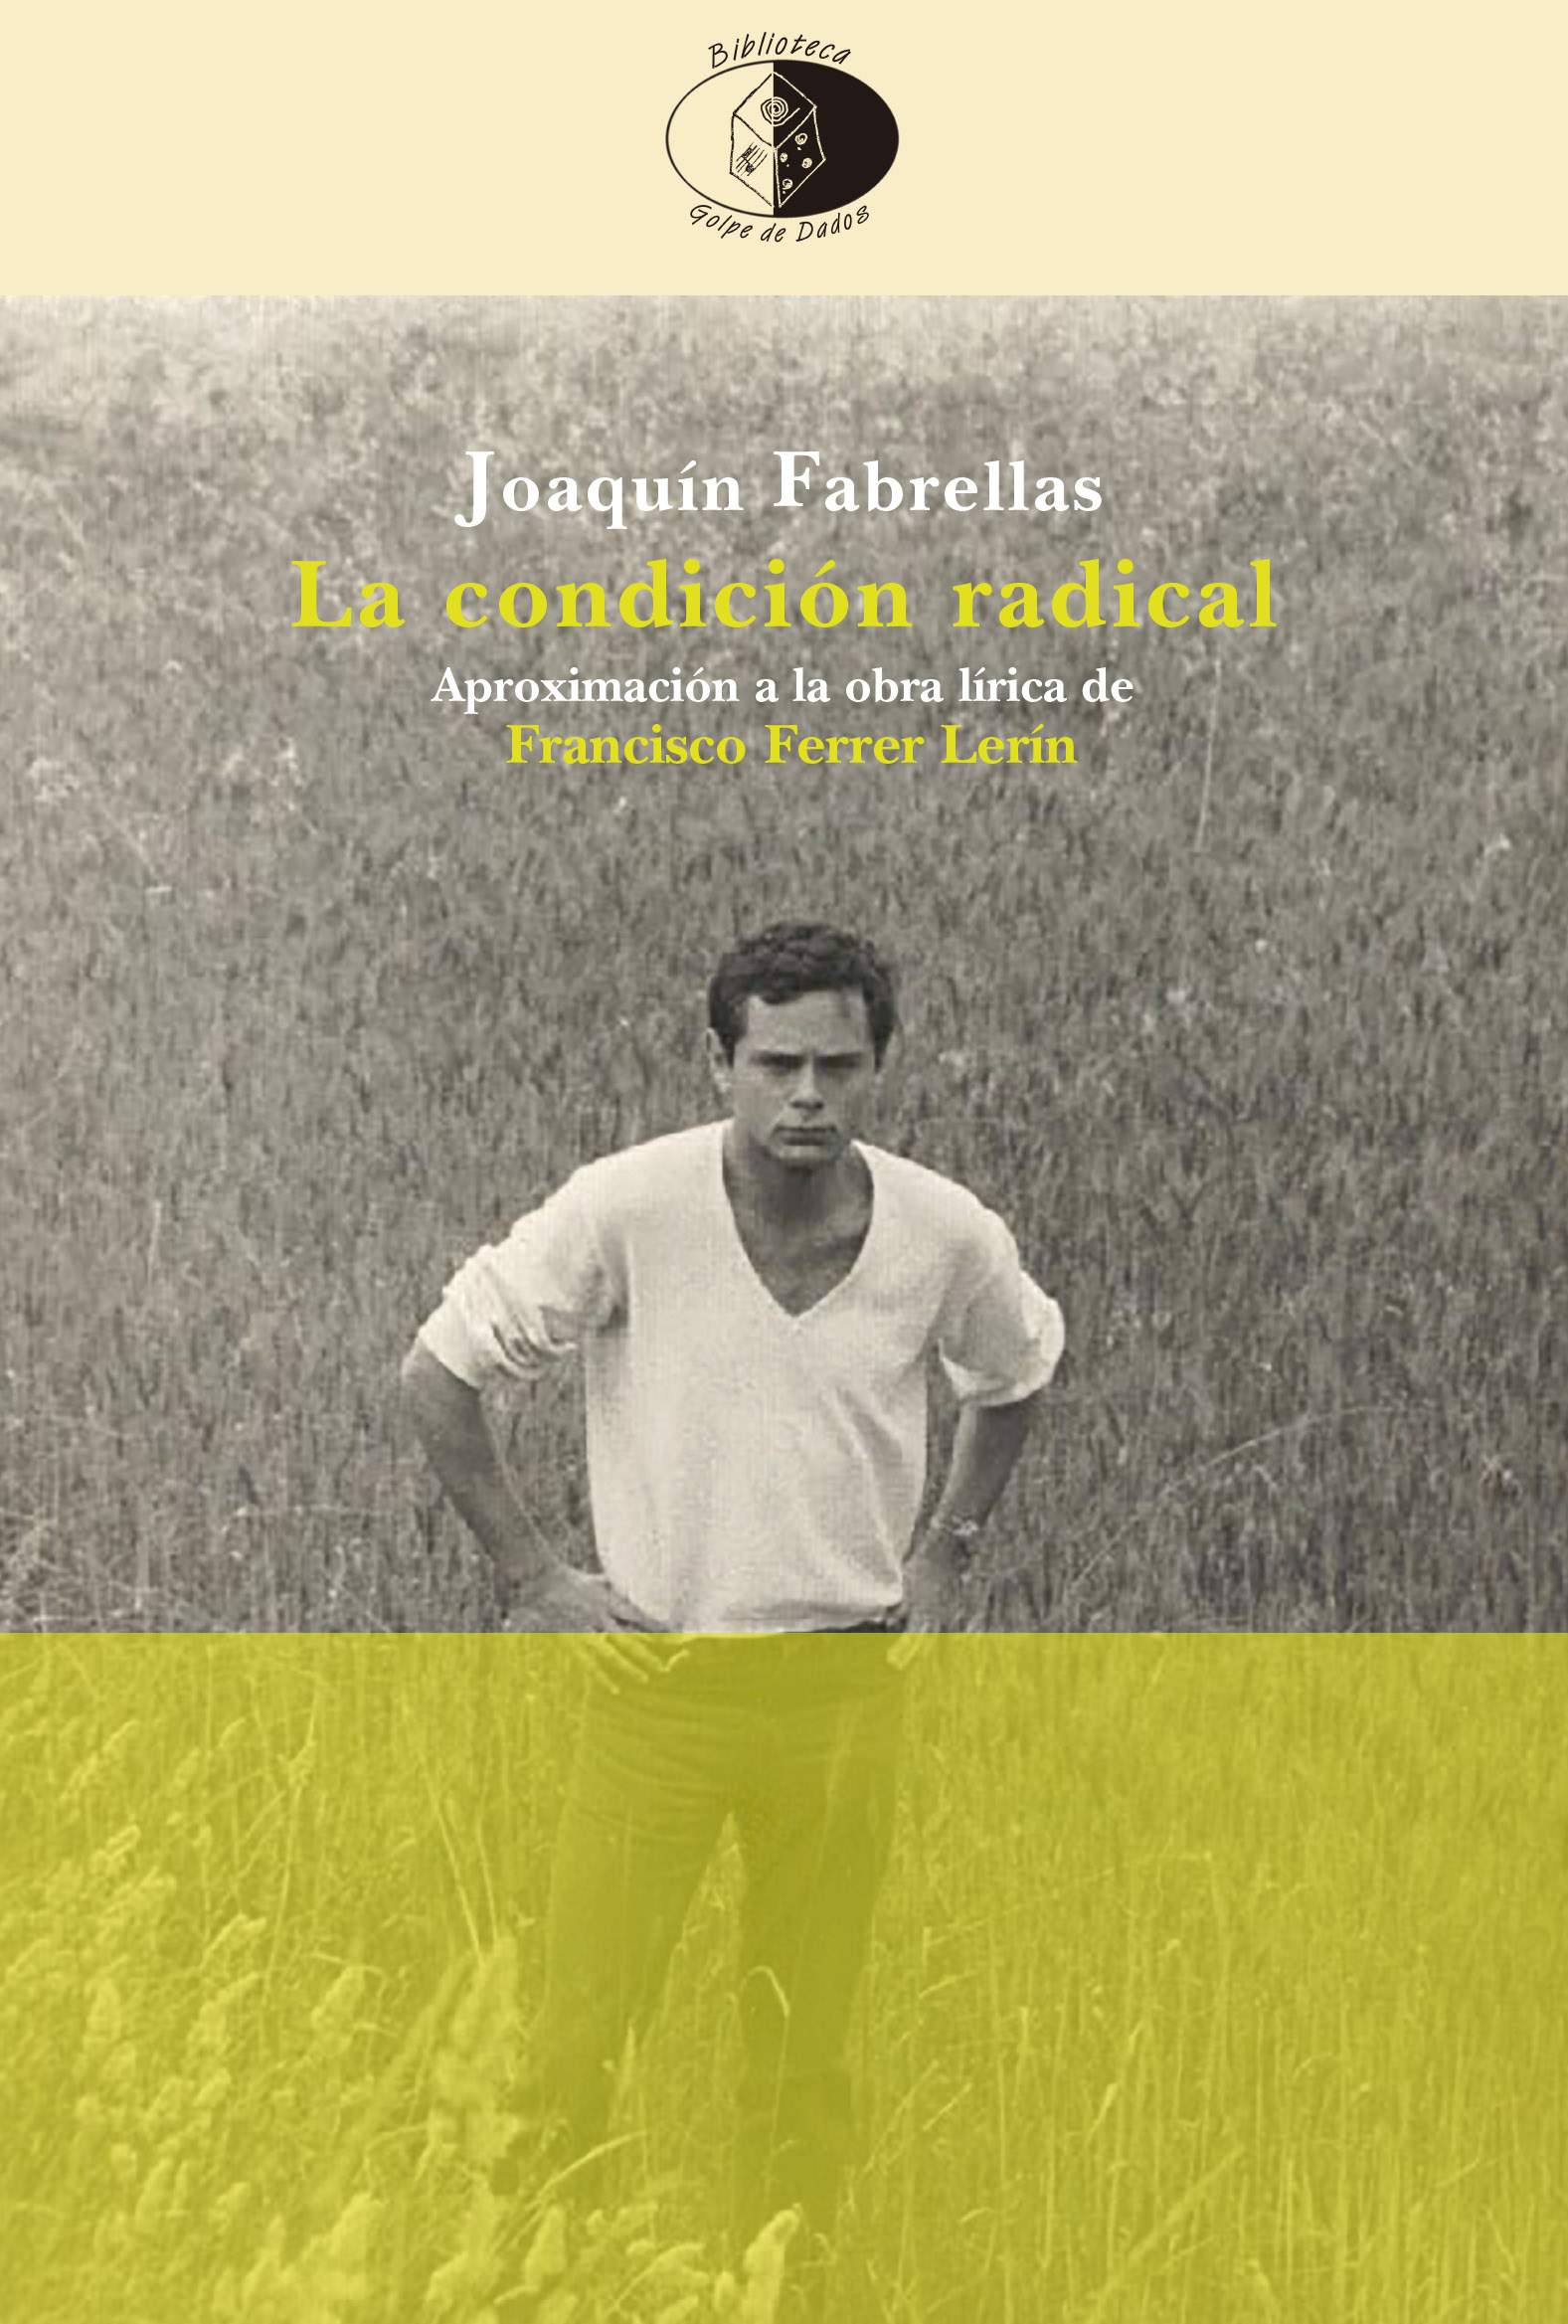 Ricardo Díez Pellejero reseña La condición radical. Aproximación a la obra lírica de Francisco Ferrer Lerín, de Joaquín Fabrellas